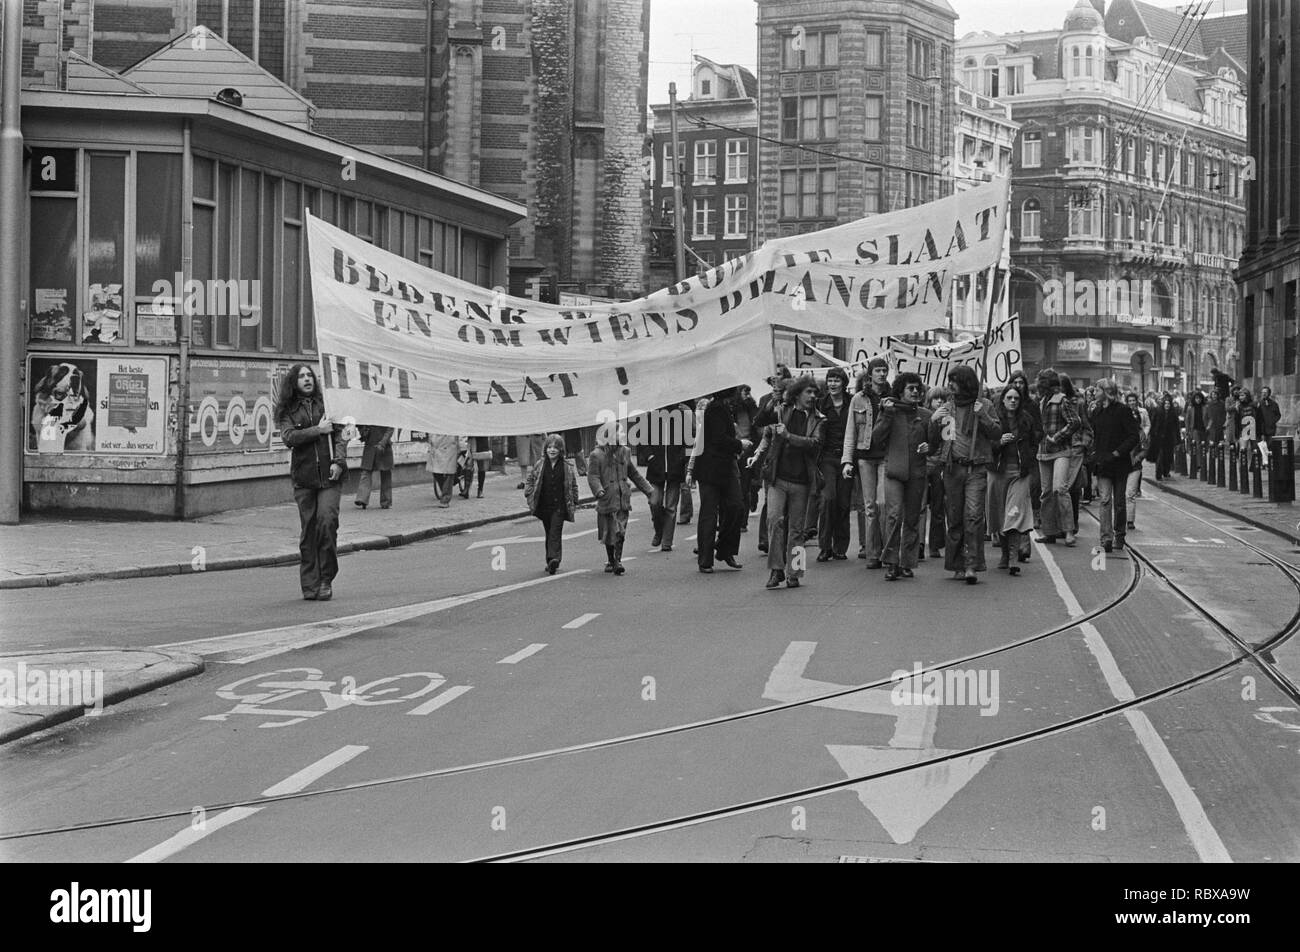 Actiegroepen uit Nieuwmarktbuurt demonstreren tegen sloop Amsterdam demonstrant, Bestanddeelnr 927-7872. Stock Photo